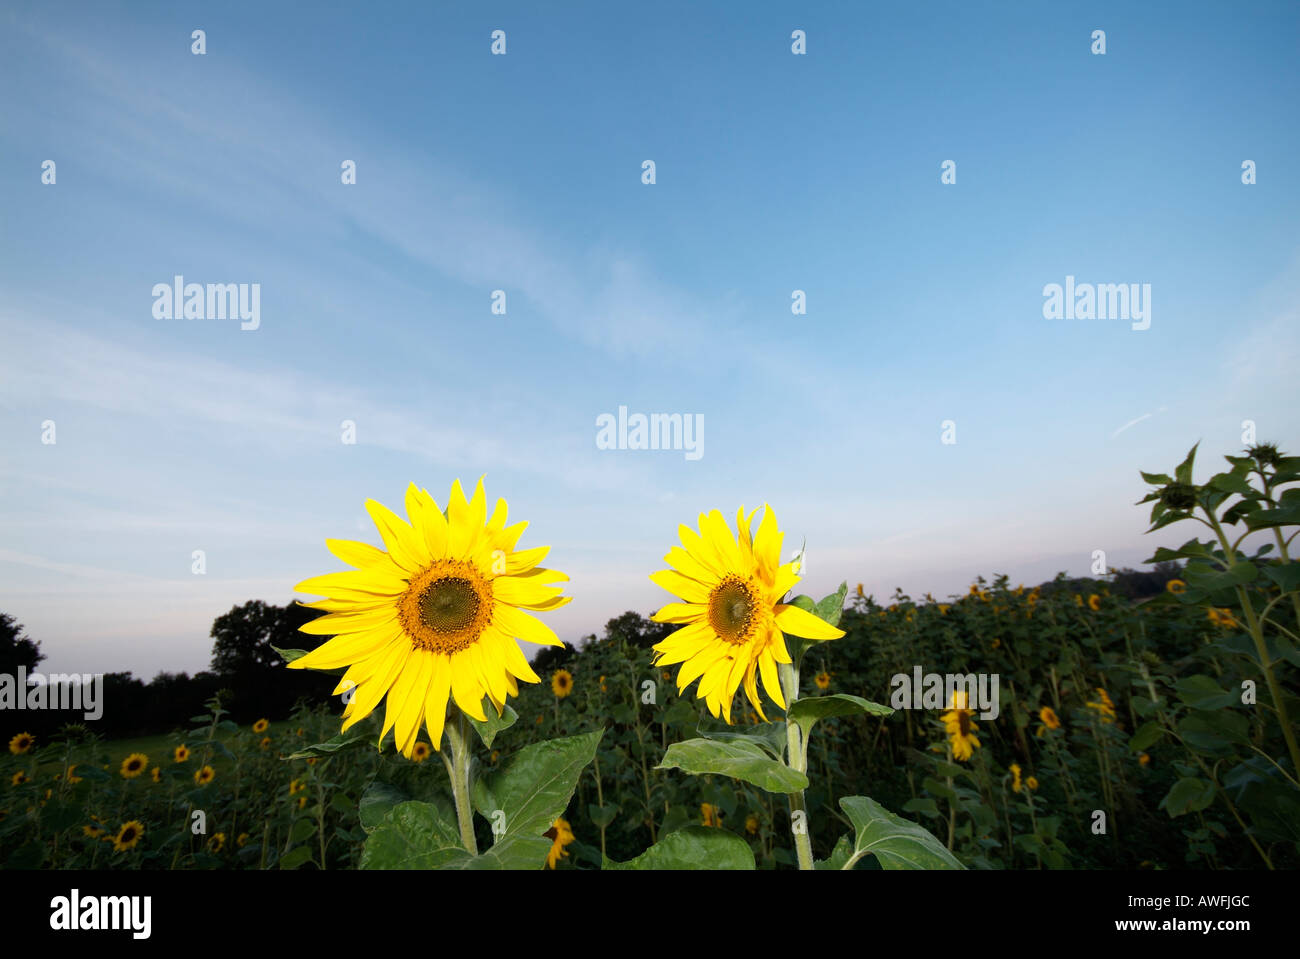 Sunflowers at sunset, Landmark of Hamburg, Germany, northern Europe Stock Photo